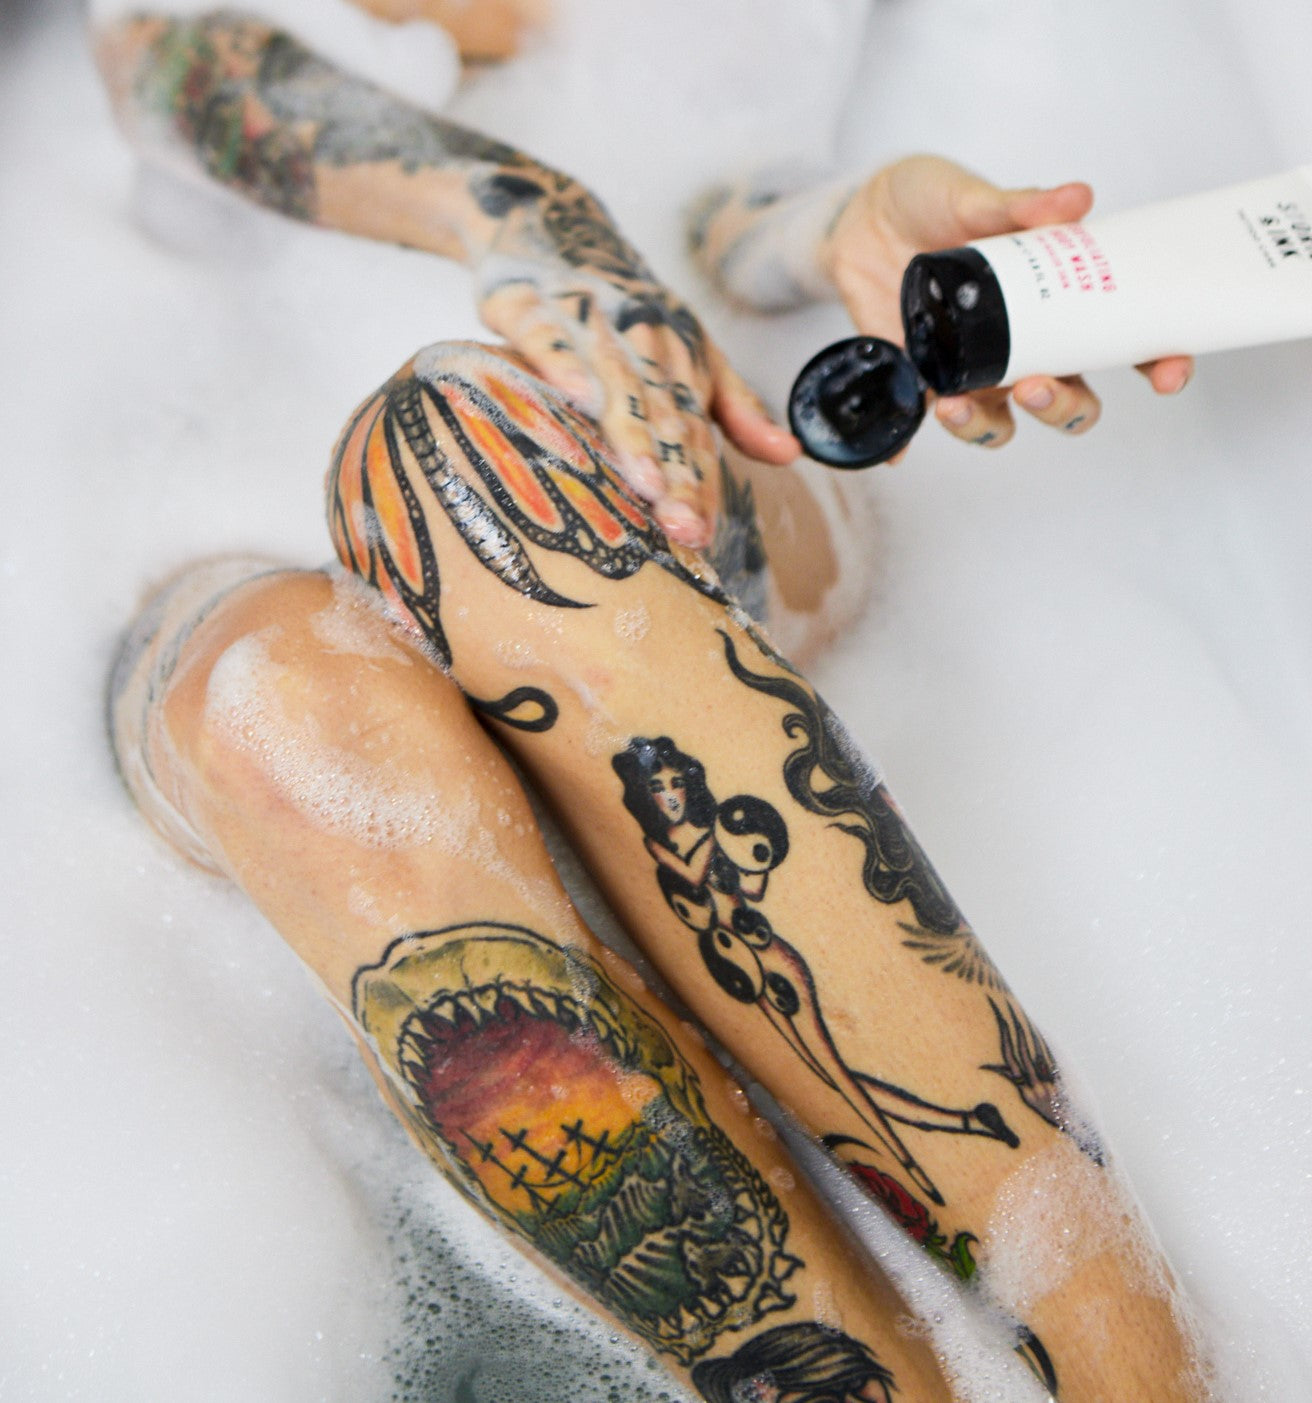 Taking a bath after tattoo